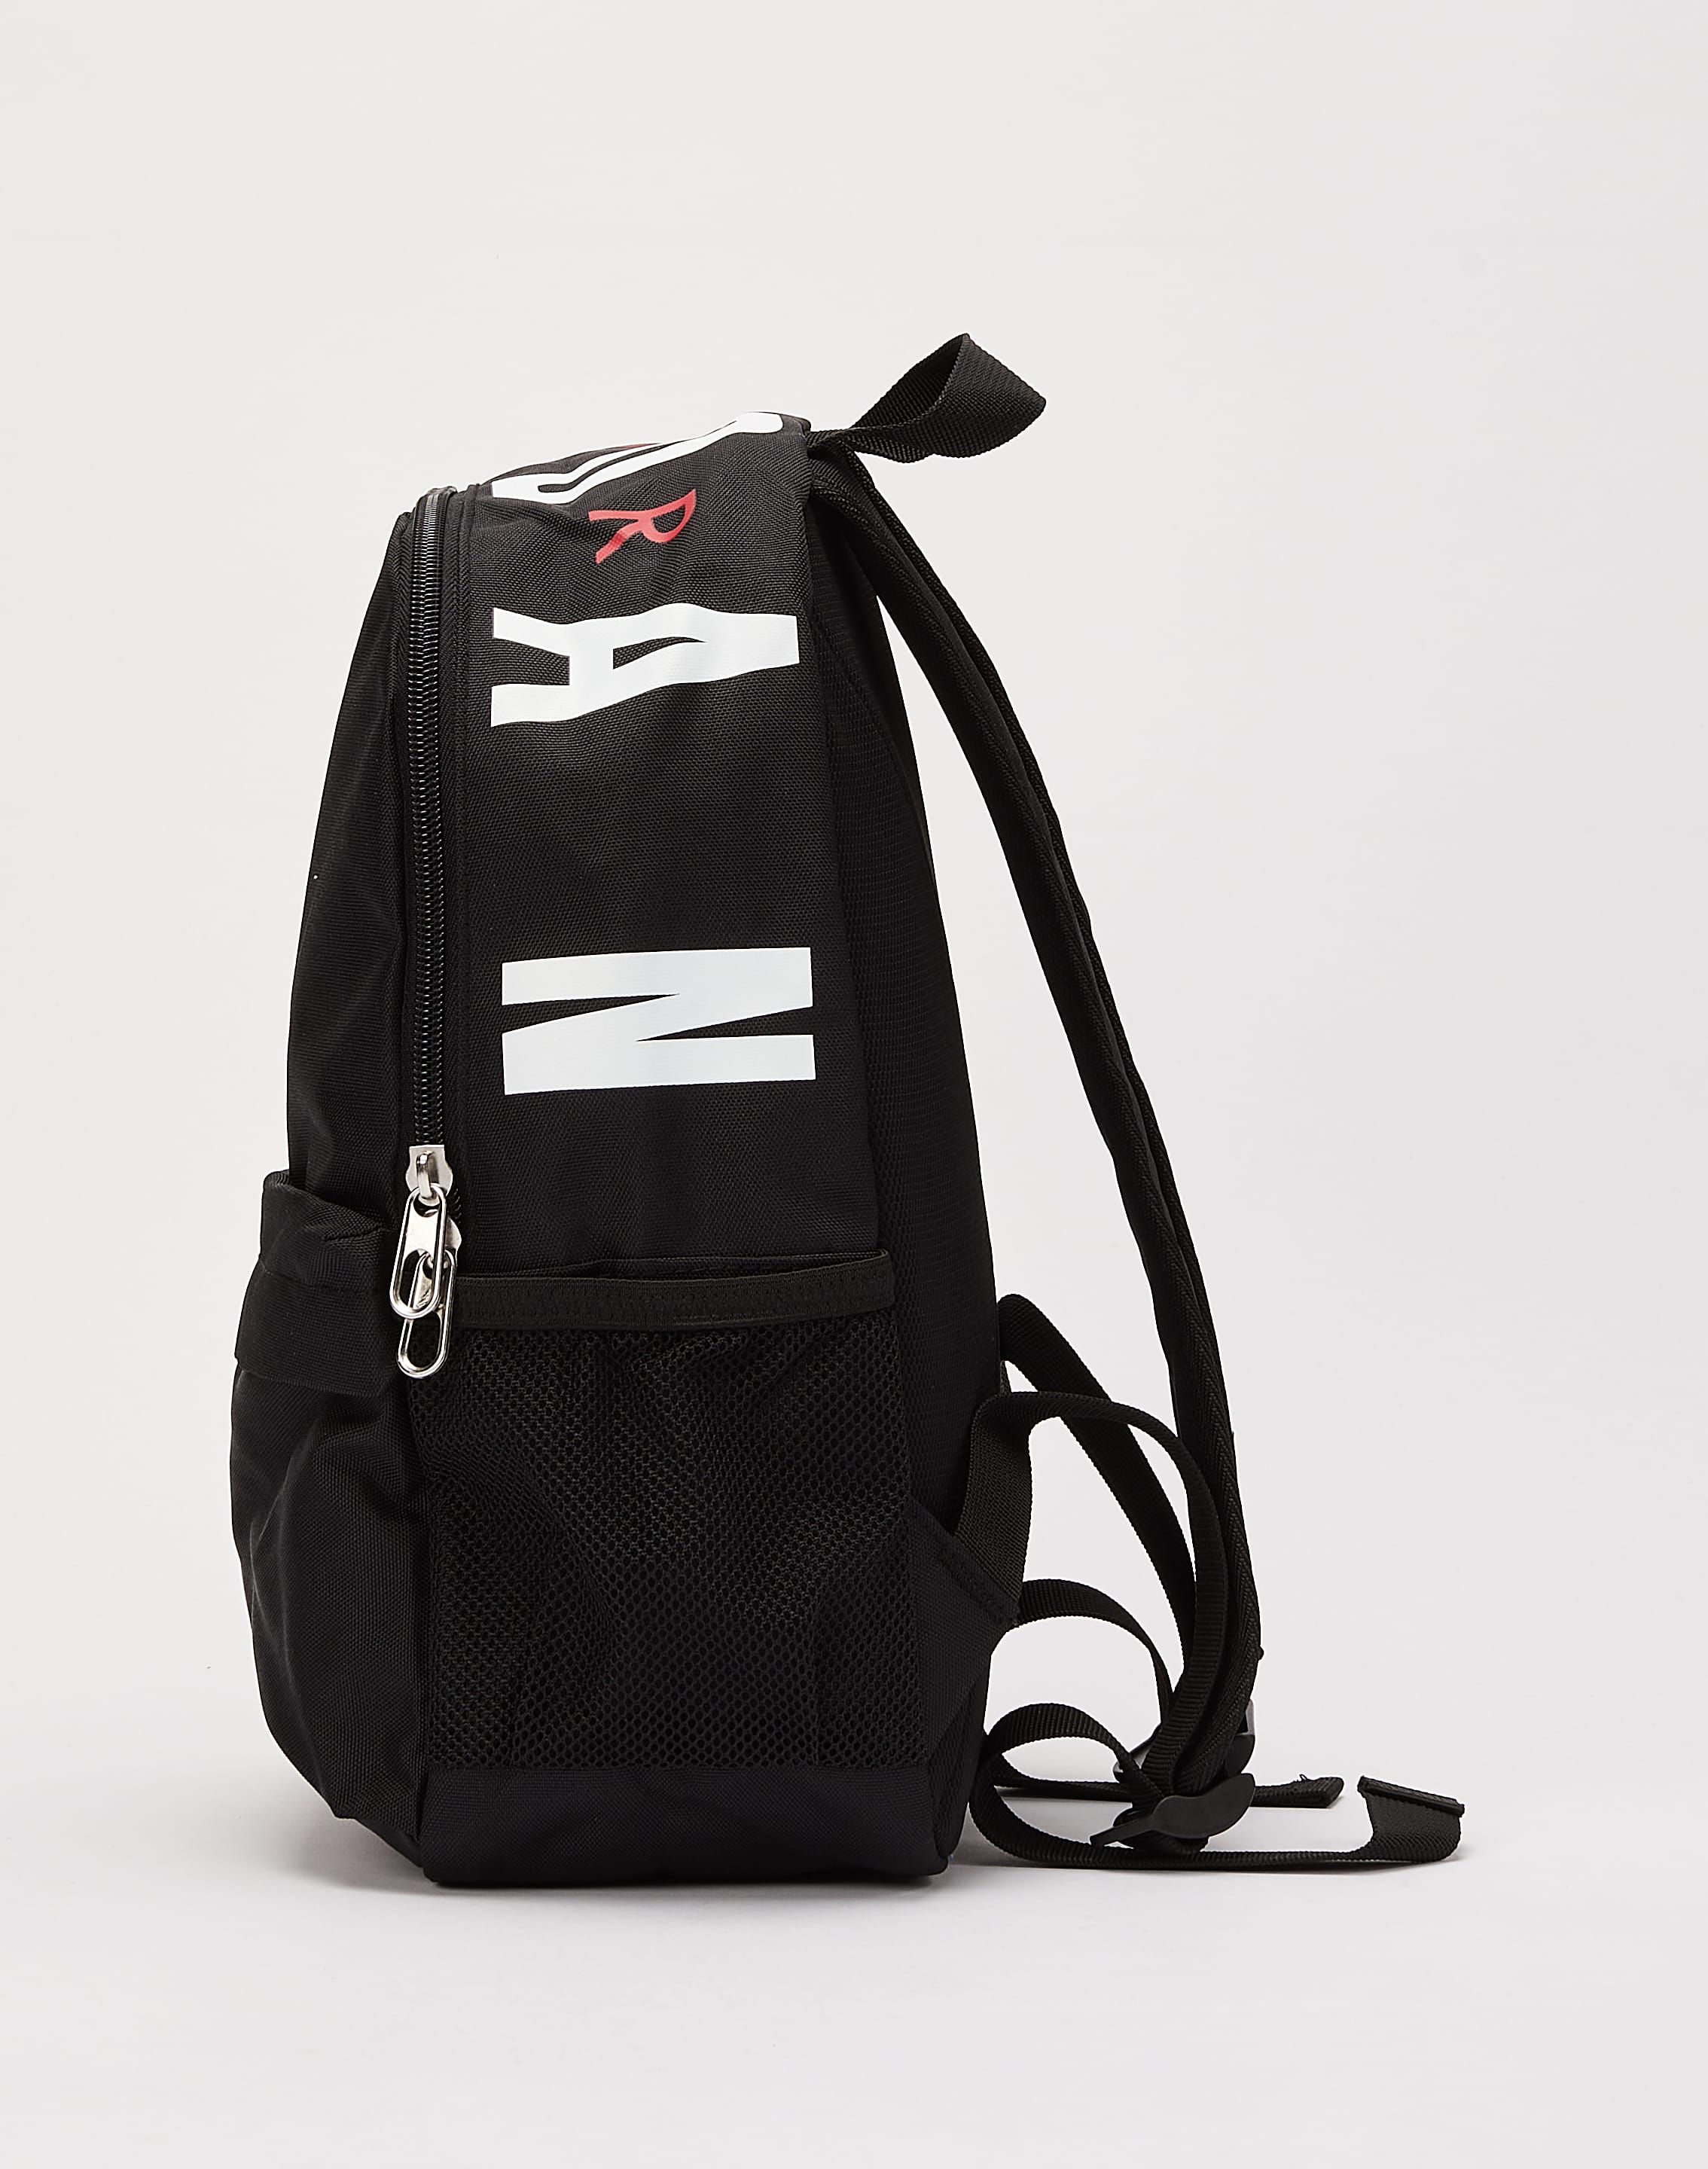 Jordan Air Mini Backpack – DTLR